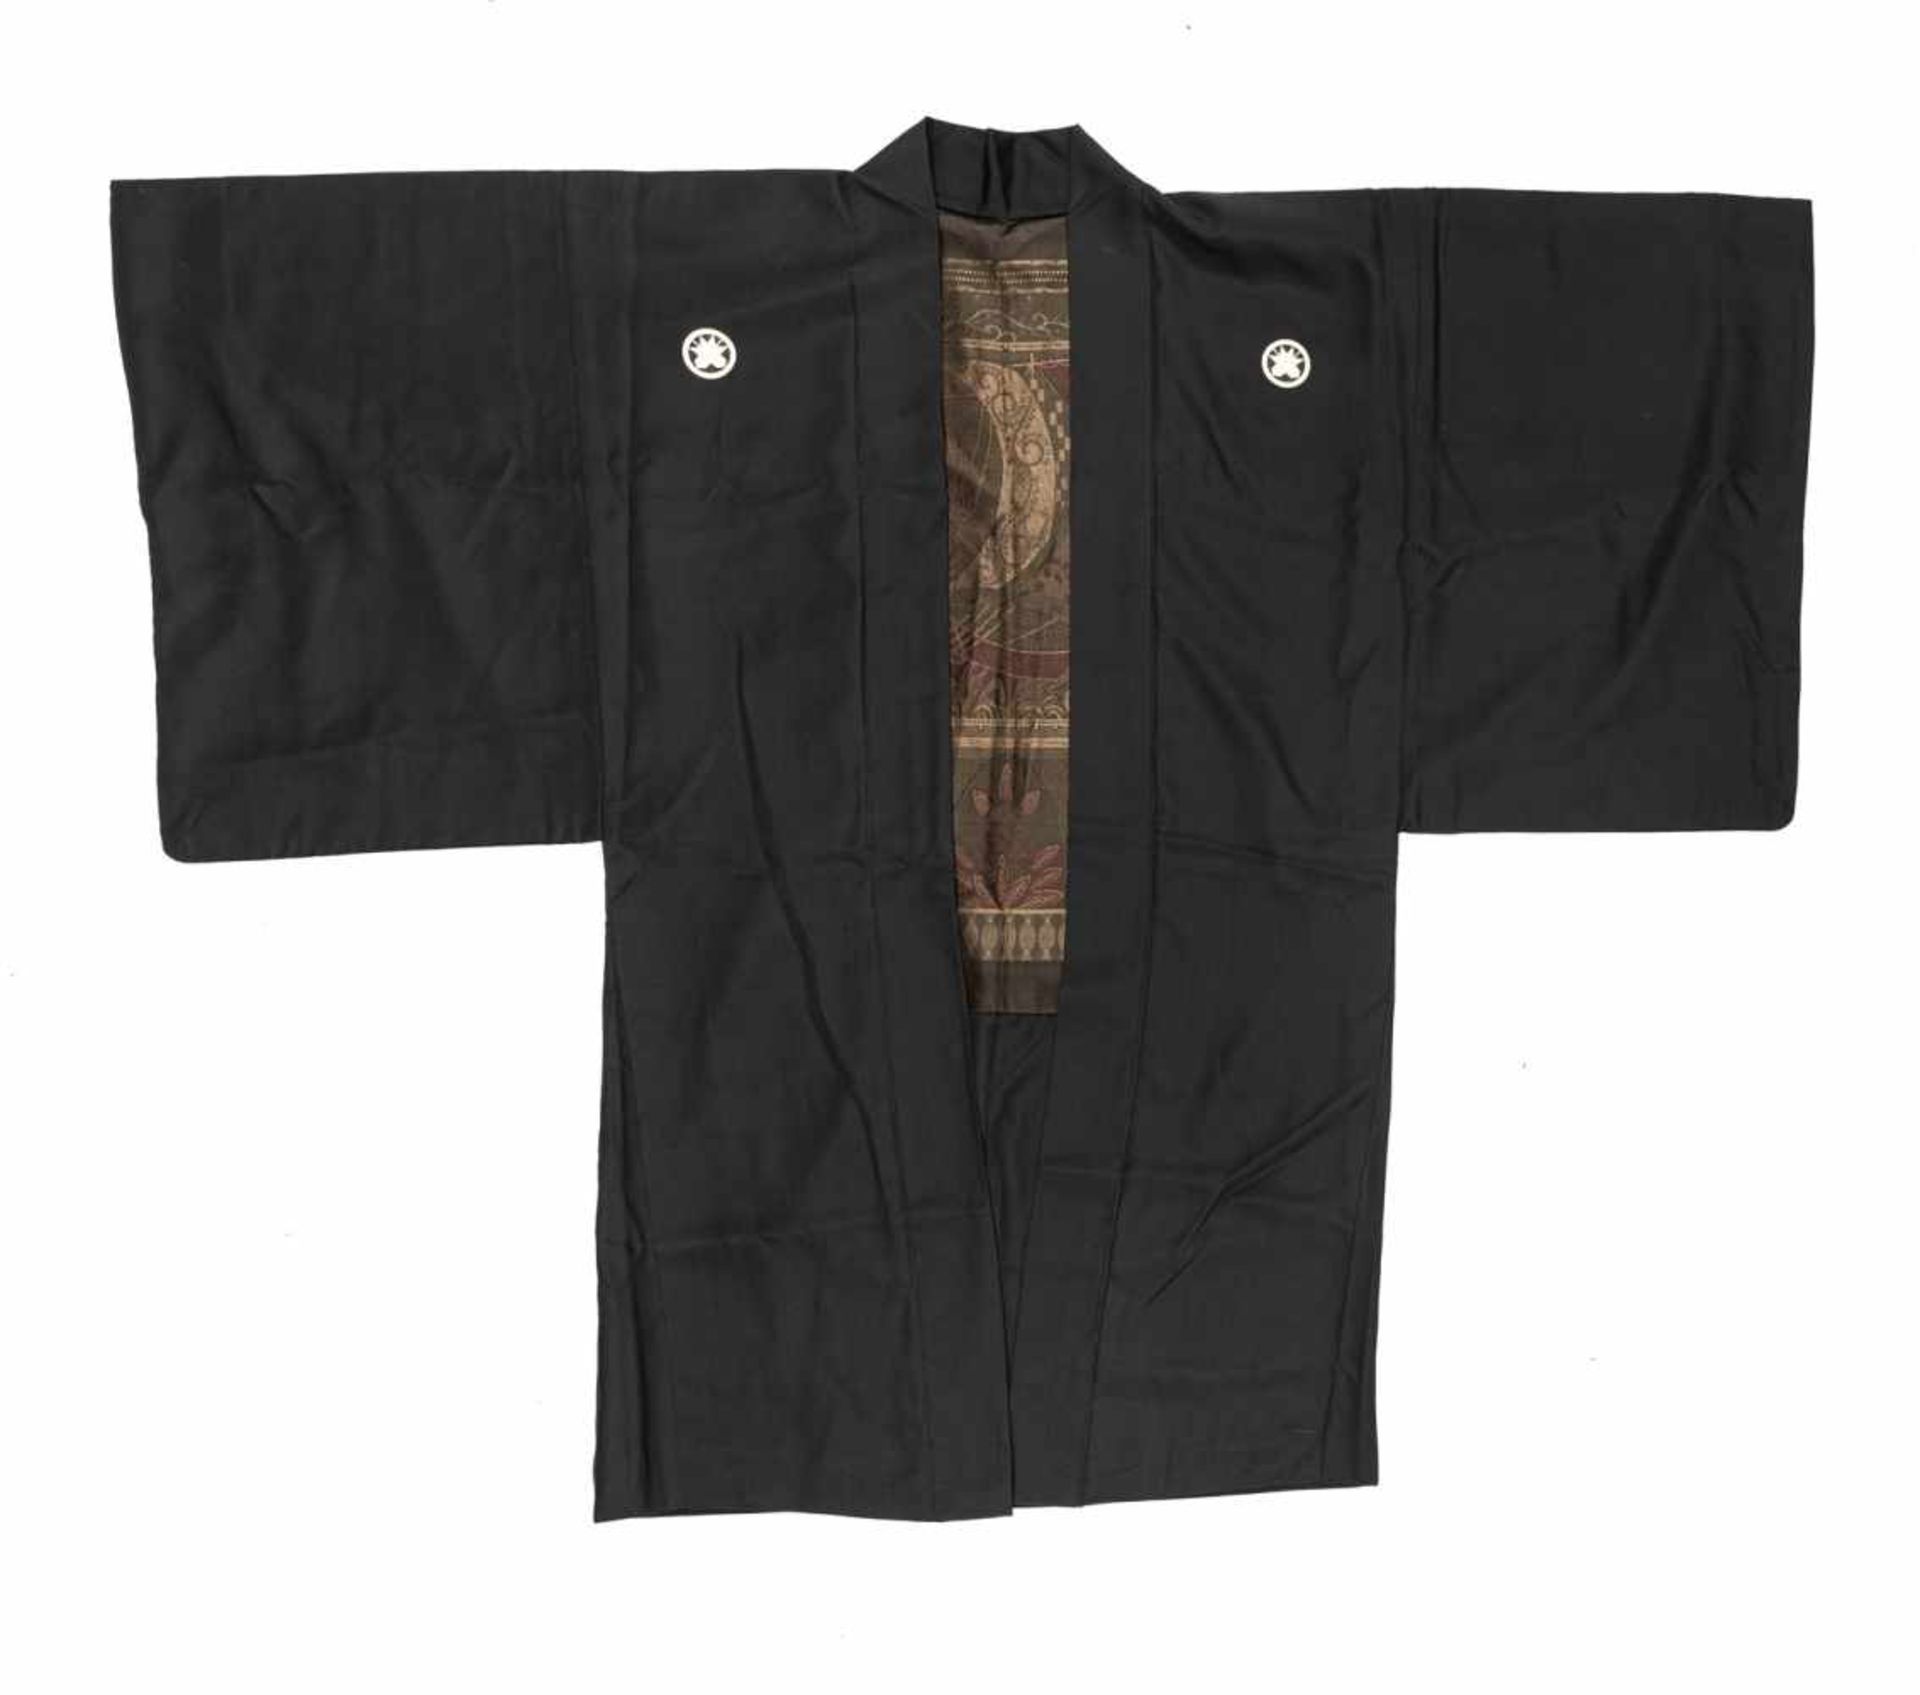 Drei Kimono mit Wappen, Schwerthülle, Hose teils in Seidenbrokat und Seide gearbeitet - Bild 4 aus 16